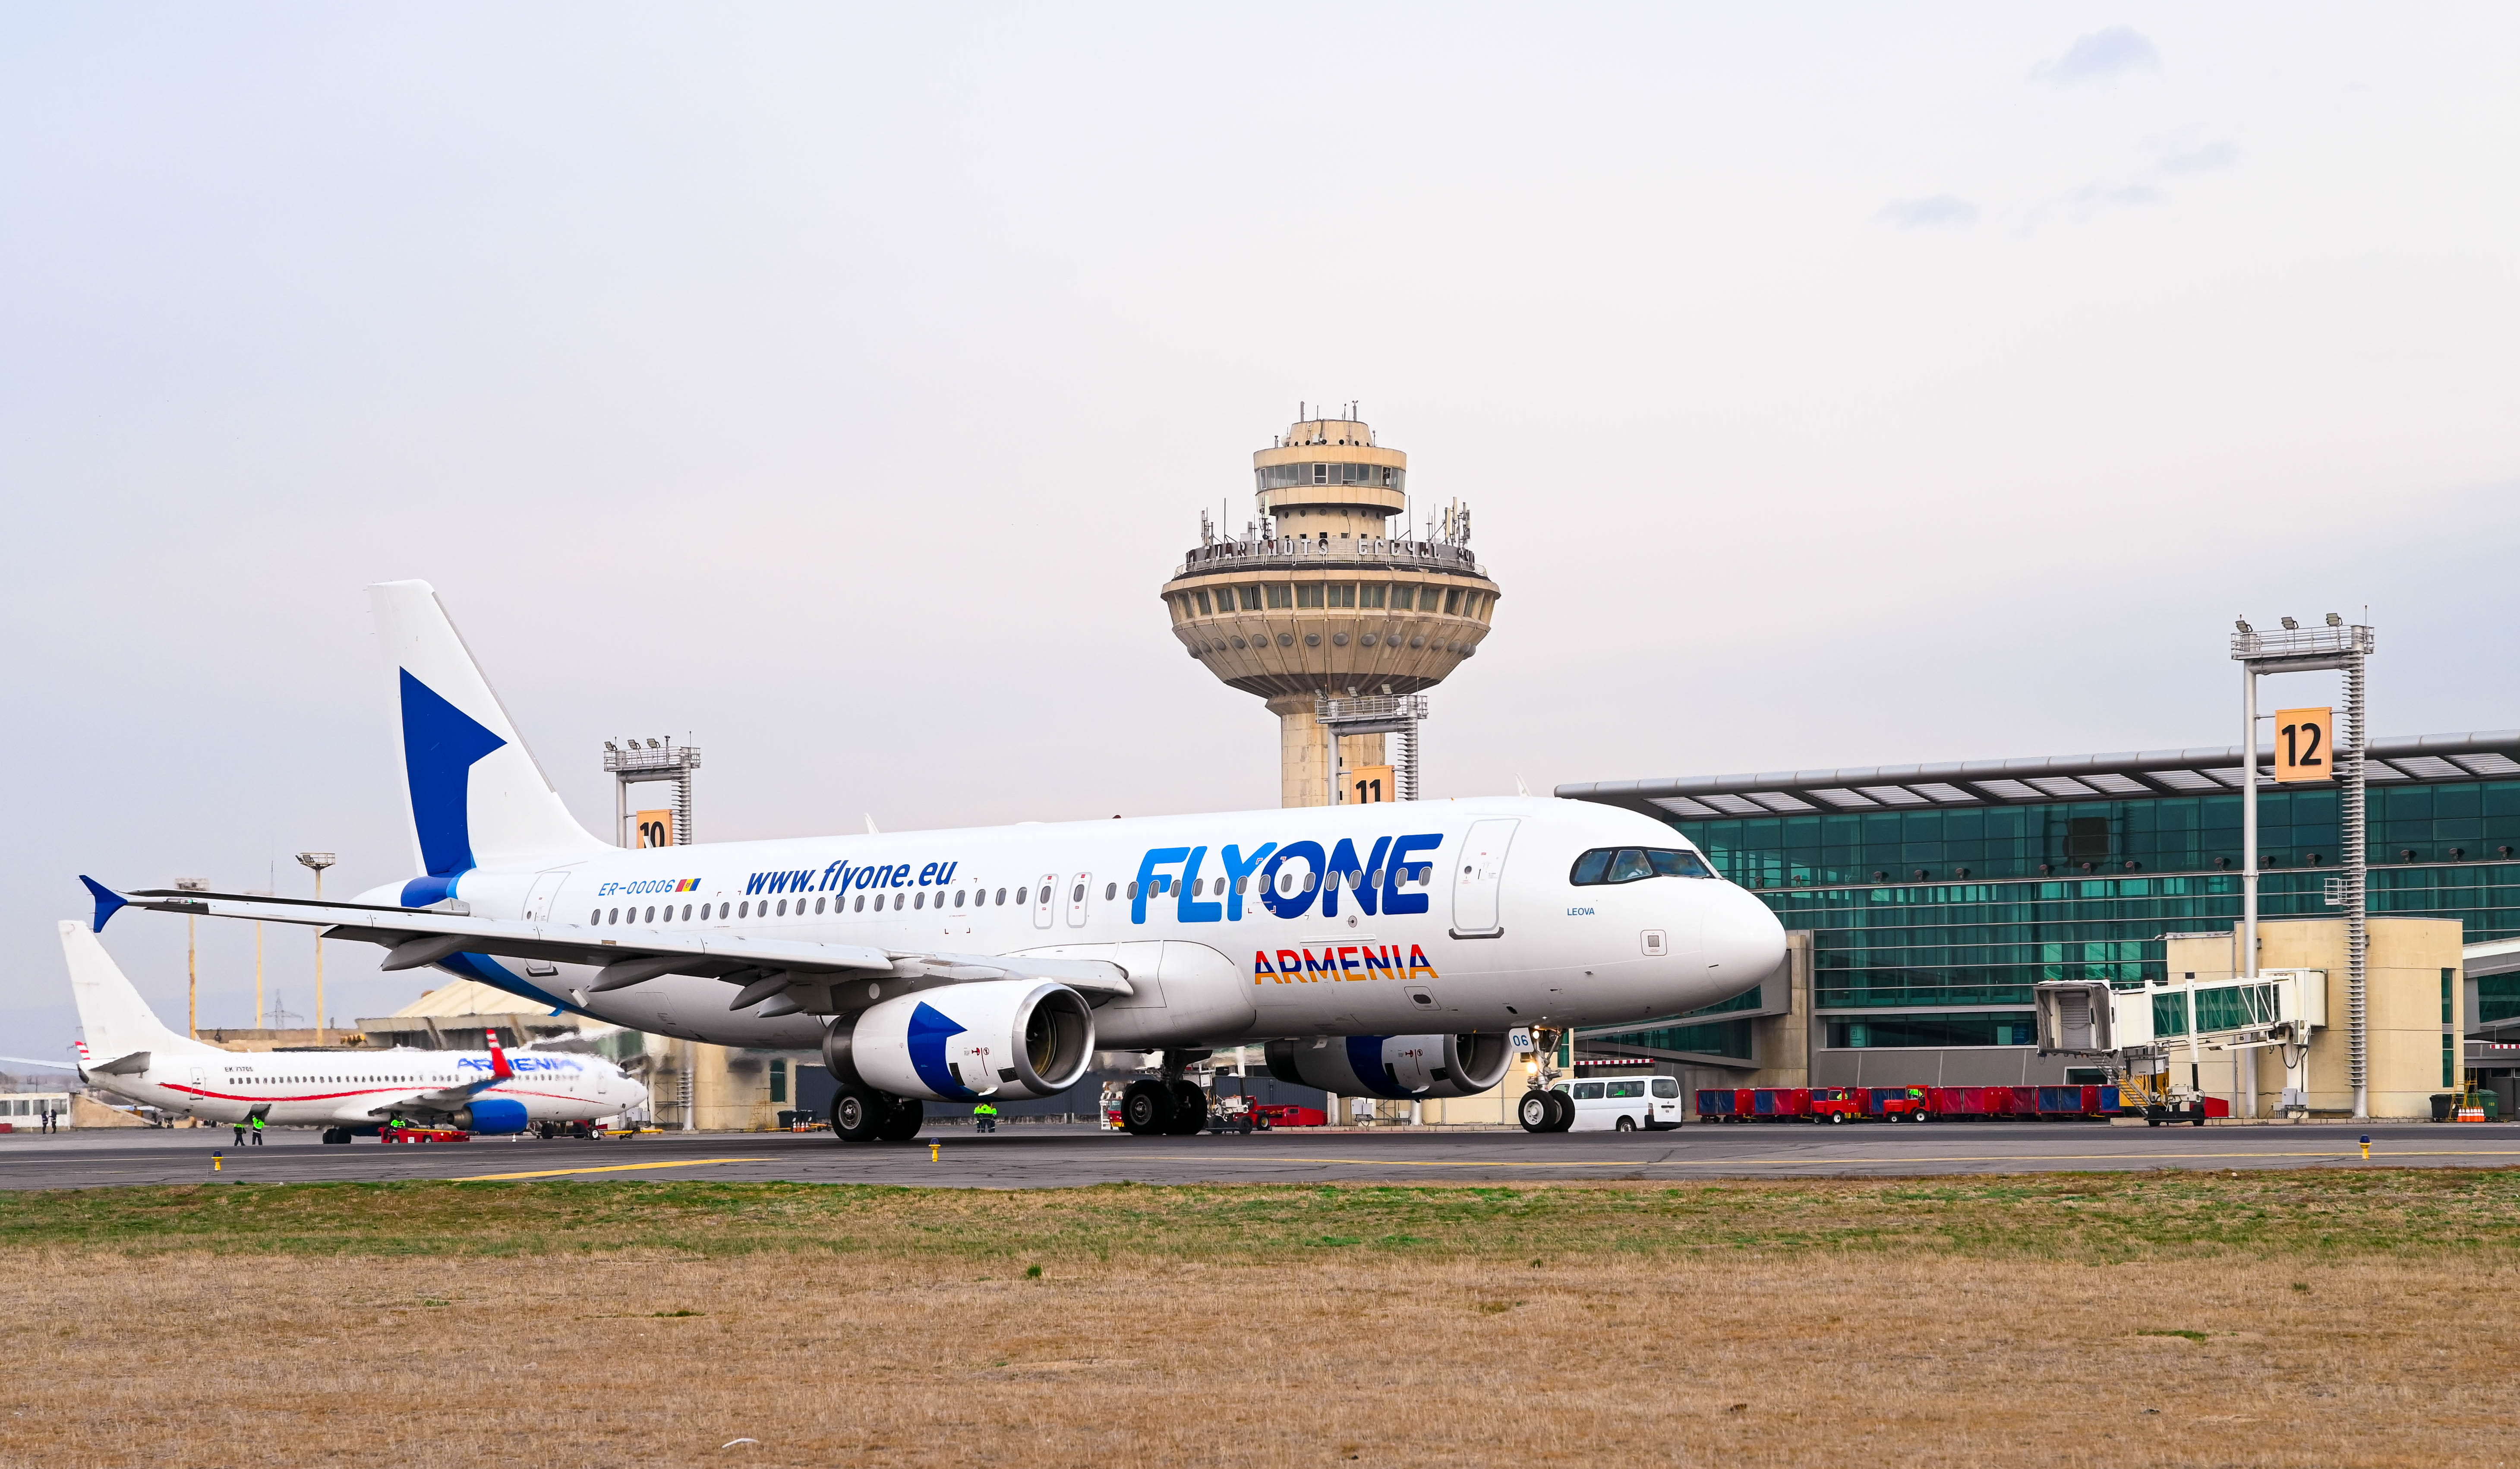 Авиационные власти Турции не предоставили компании FlyOne Armenia возможность осуществлять рейсы в европейские страны через ее воздушное пространство